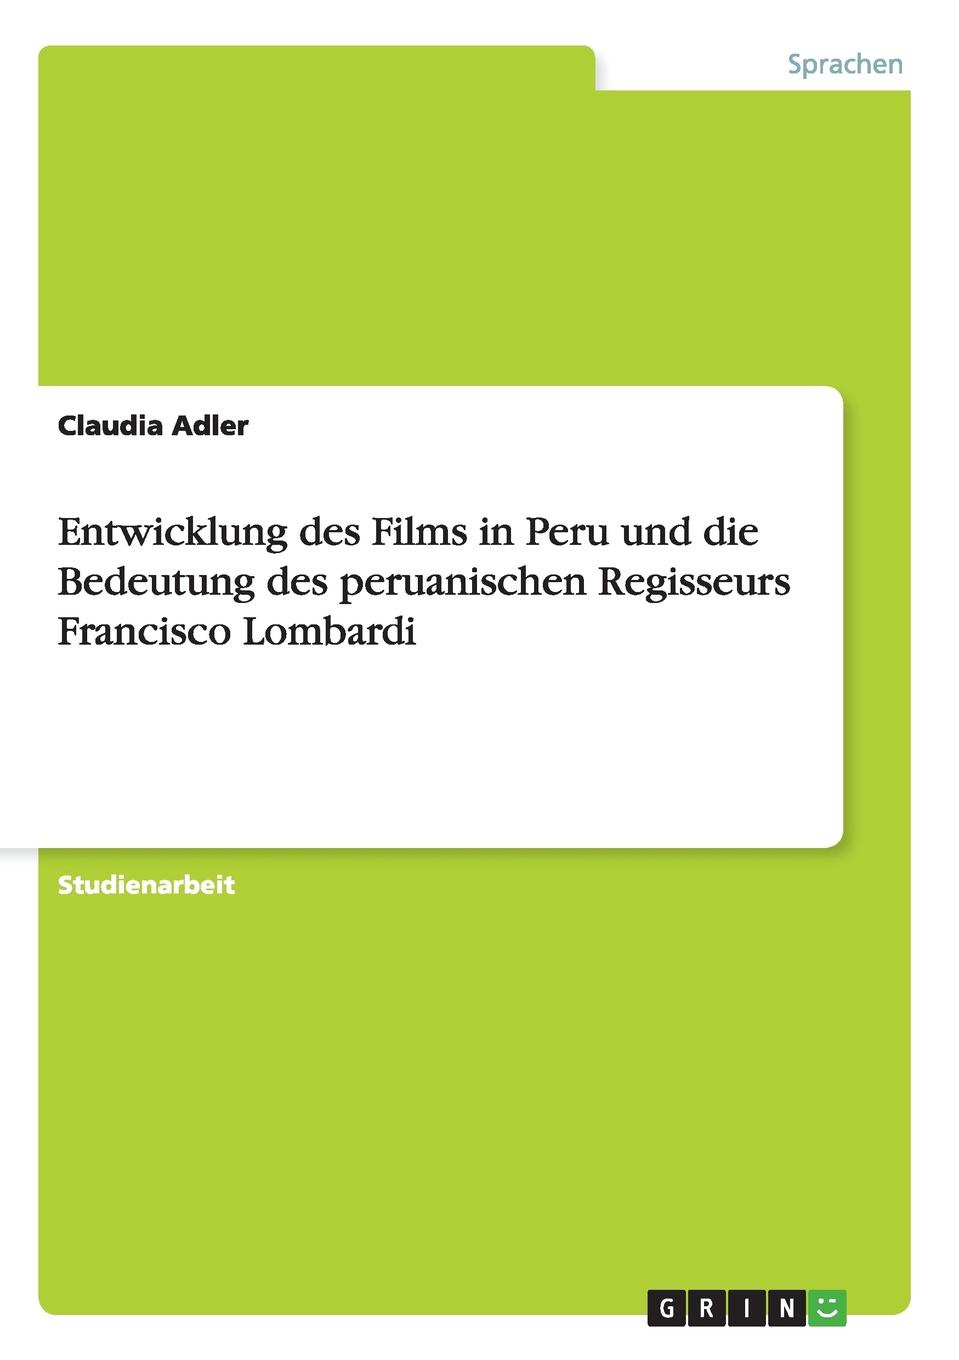 Entwicklung des Films in Peru und die Bedeutung des peruanischen Regisseurs Francisco Lombardi